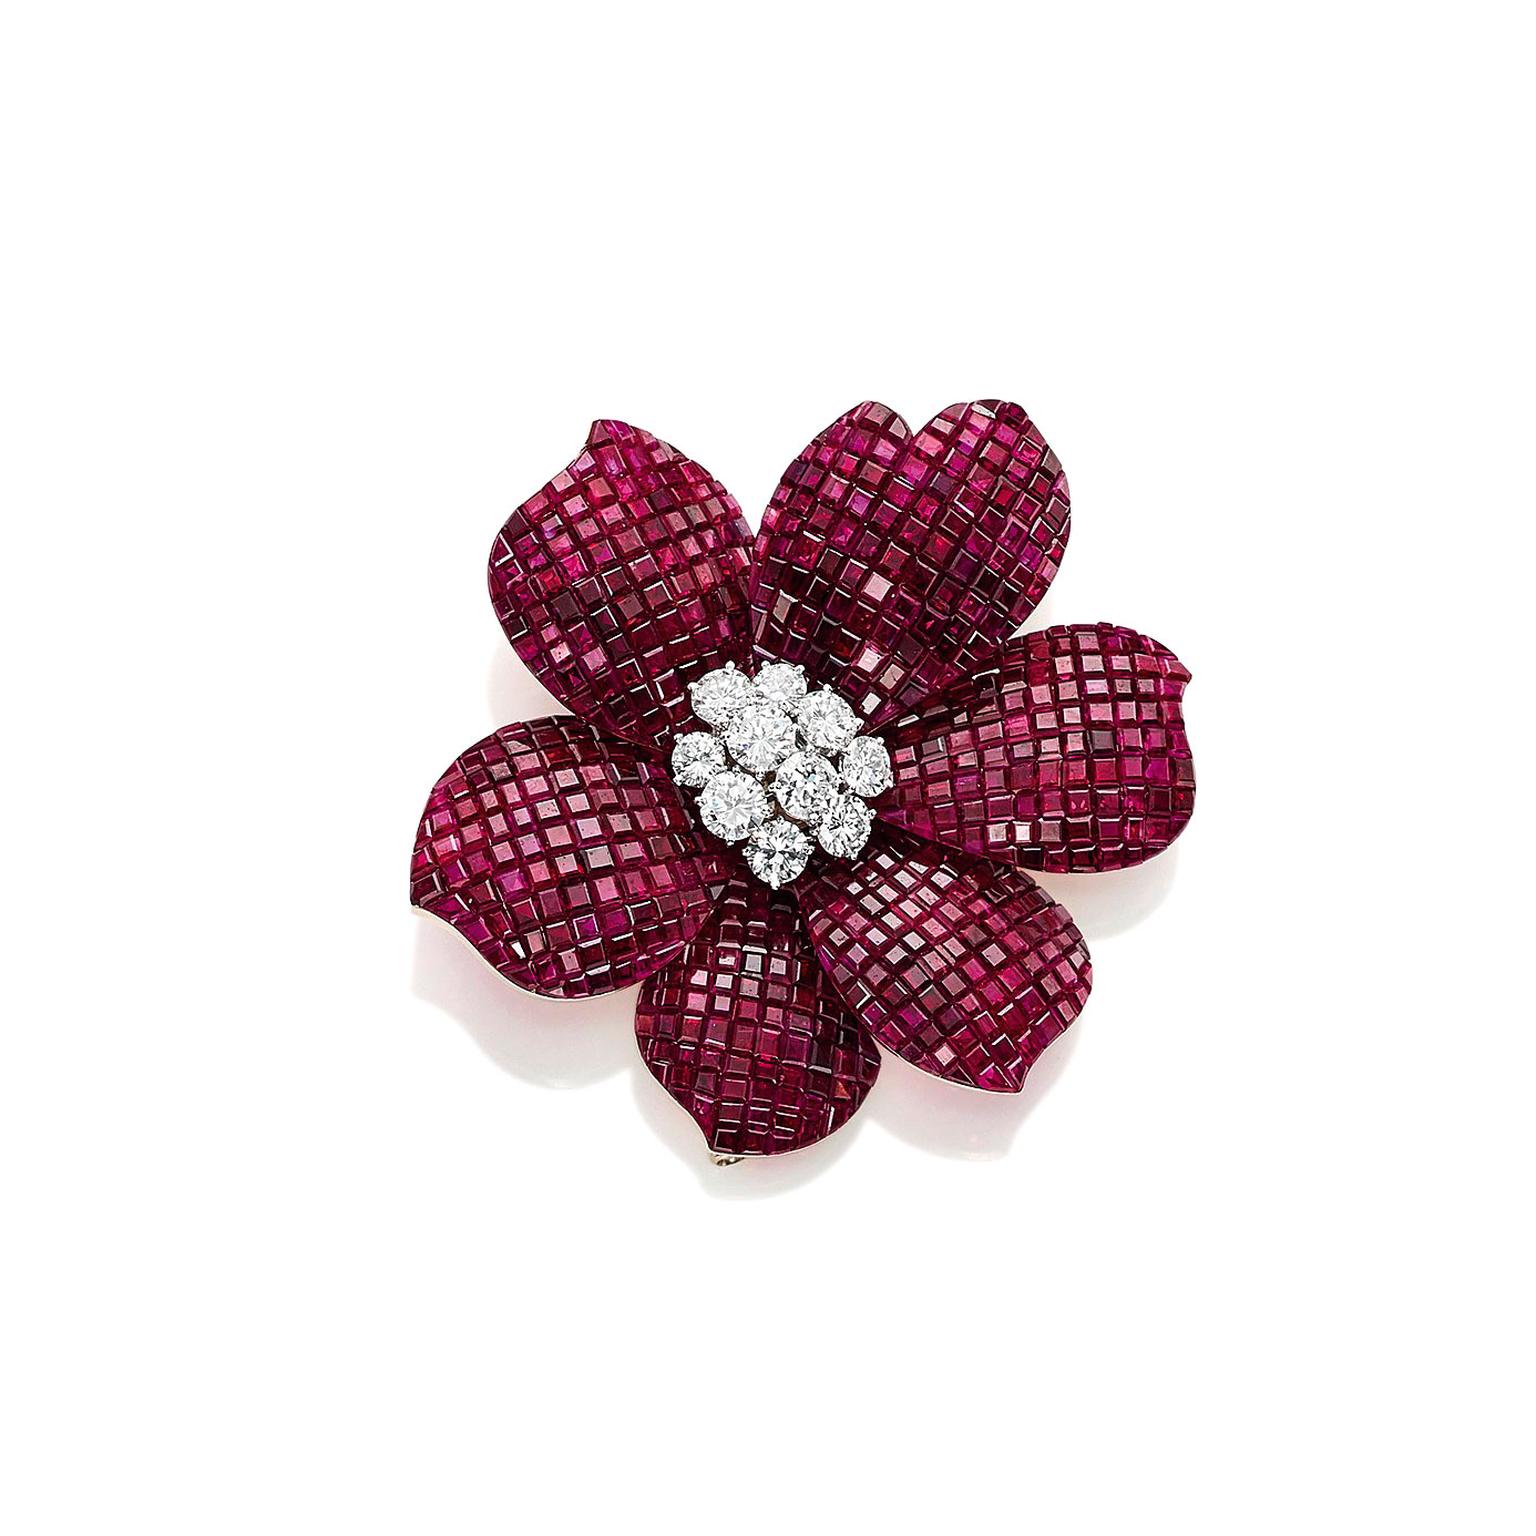 Van Cleef & Arpels ruby and diamond flower brooch